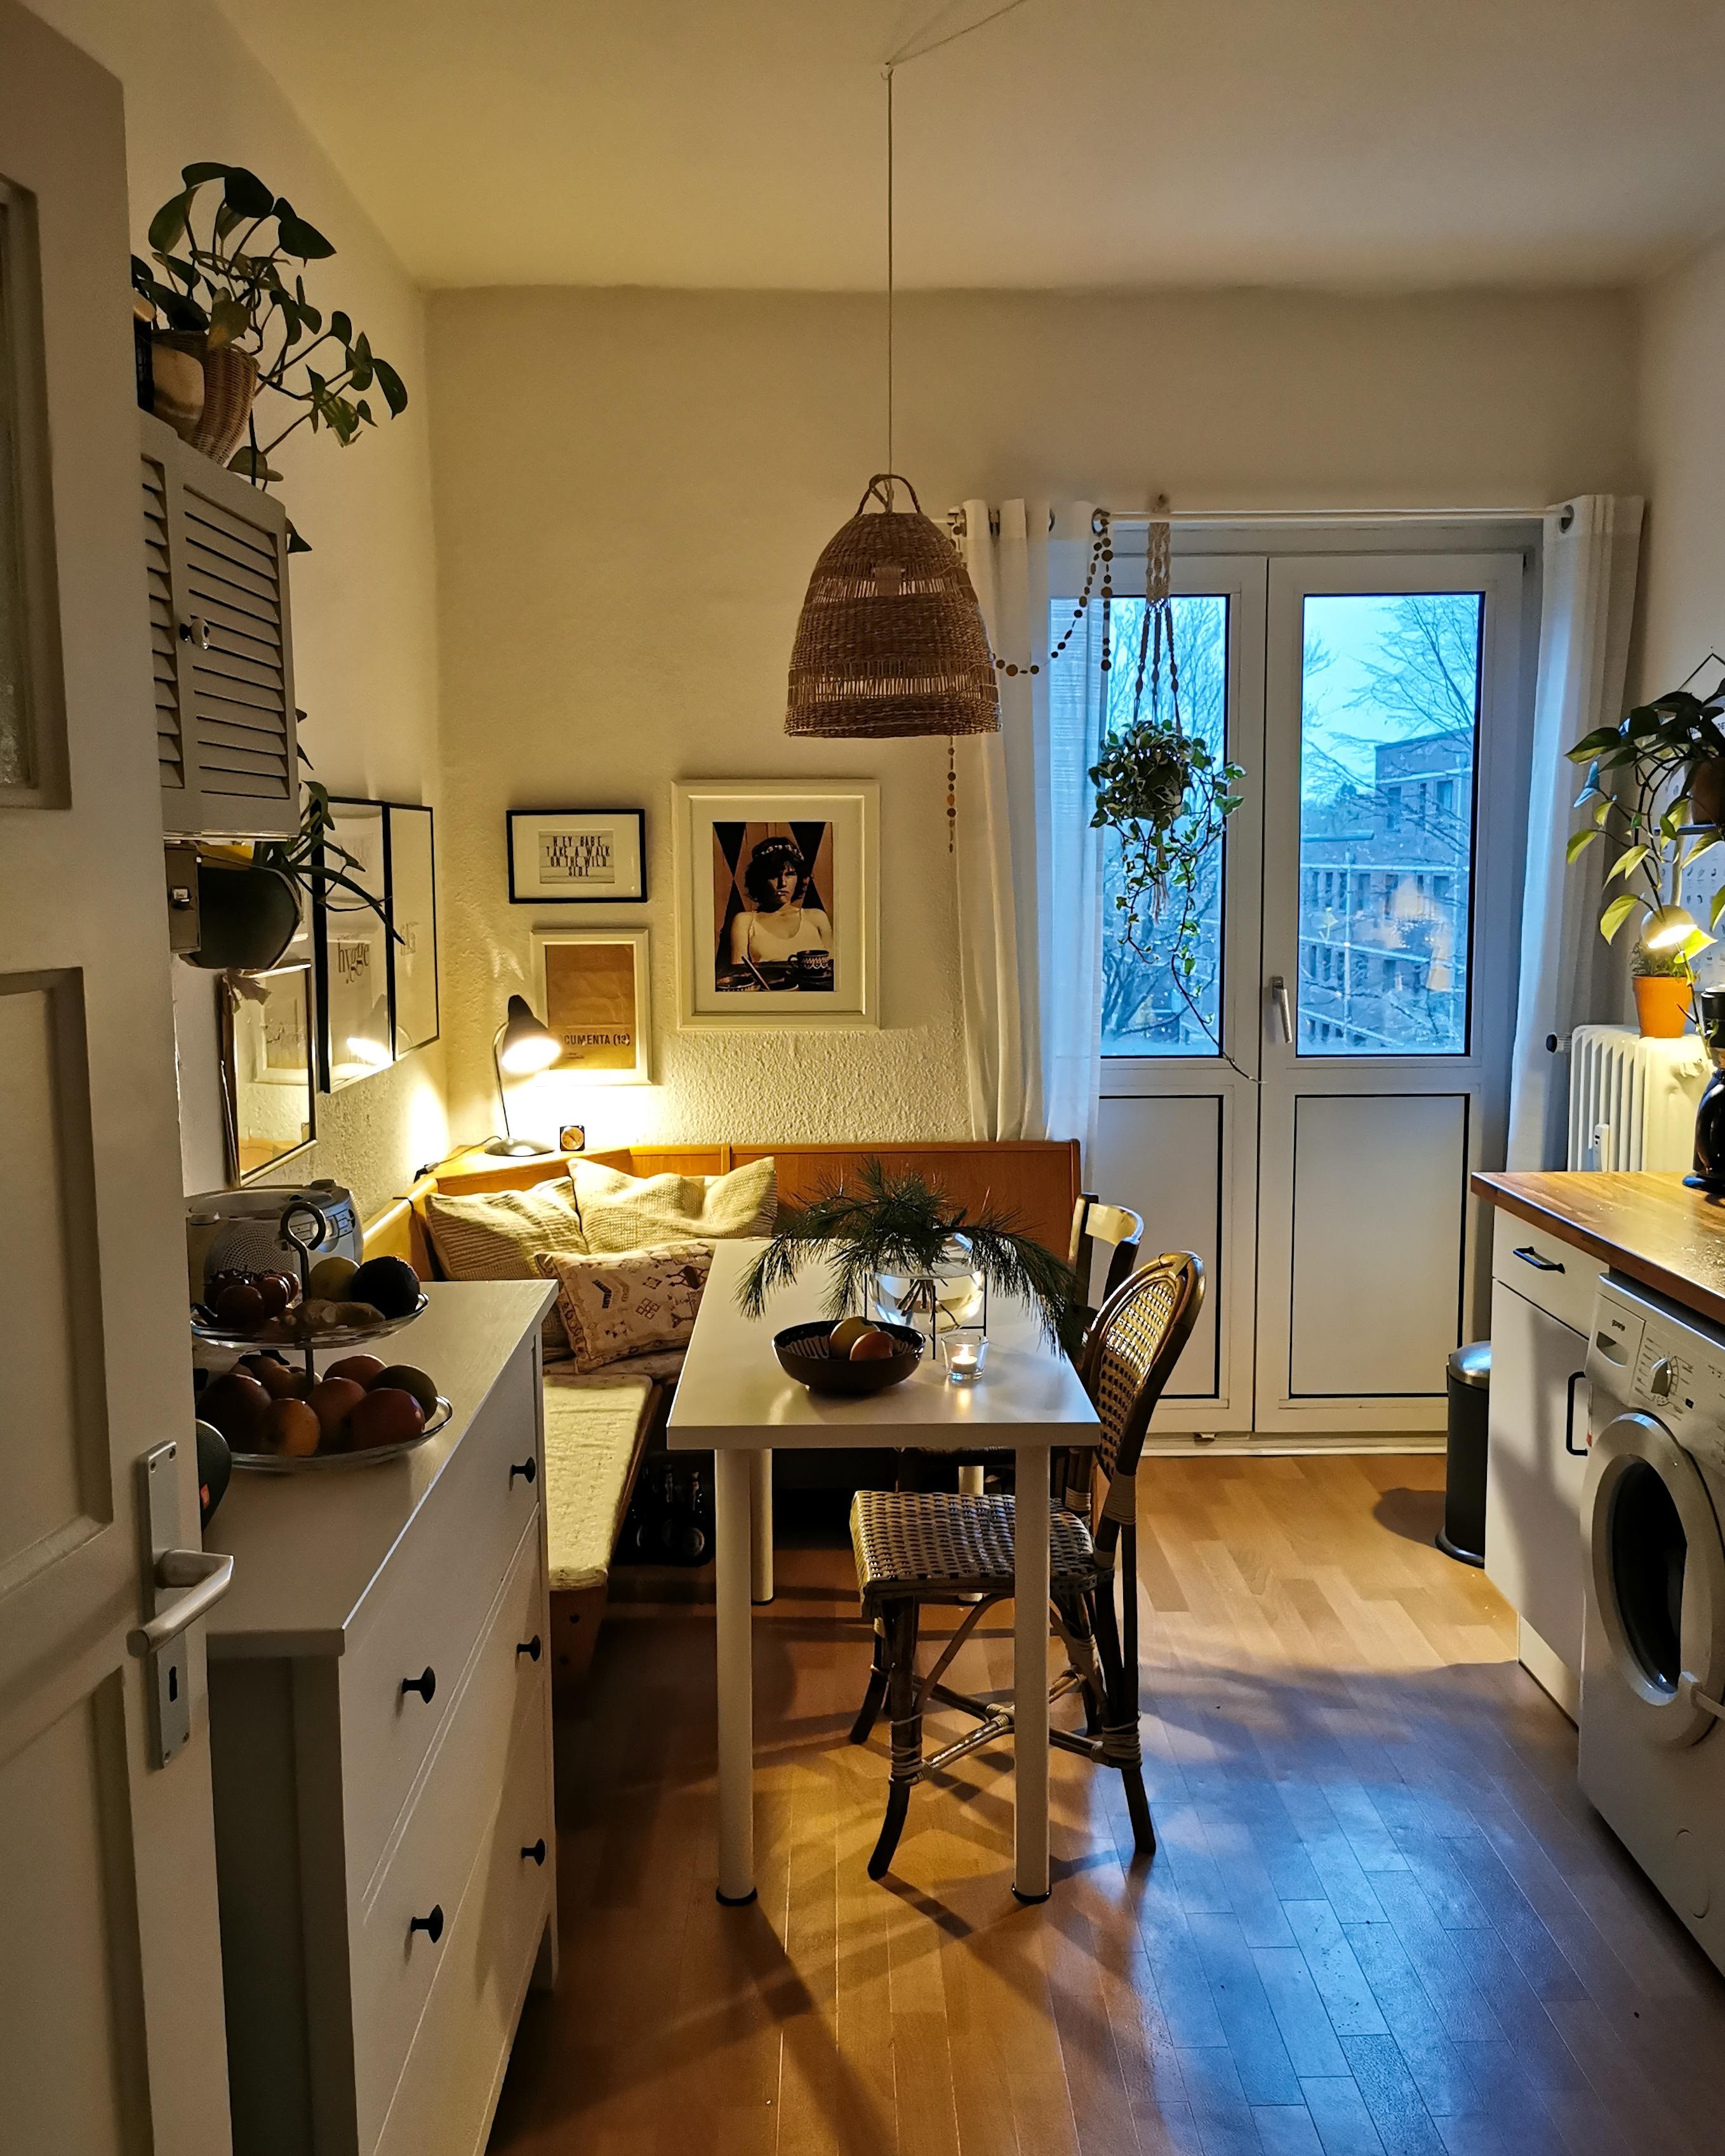 Cozy kitchen #dunklejahreszeit 